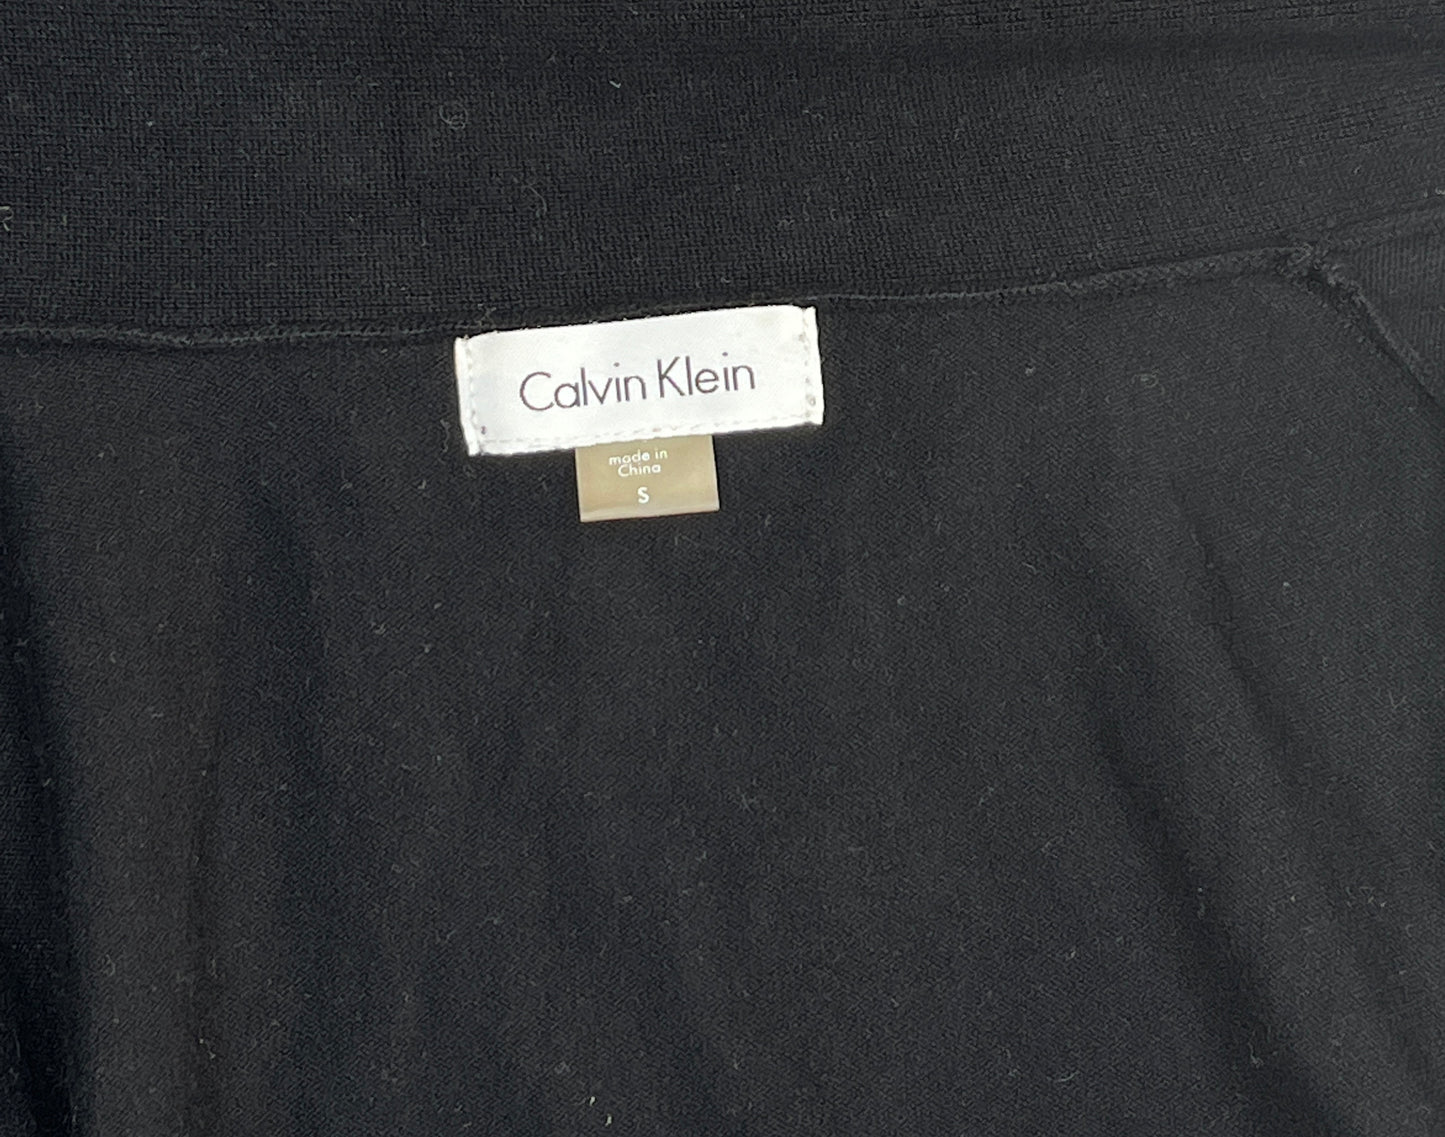 Calvin Klein Top Black Size S SKU 000001